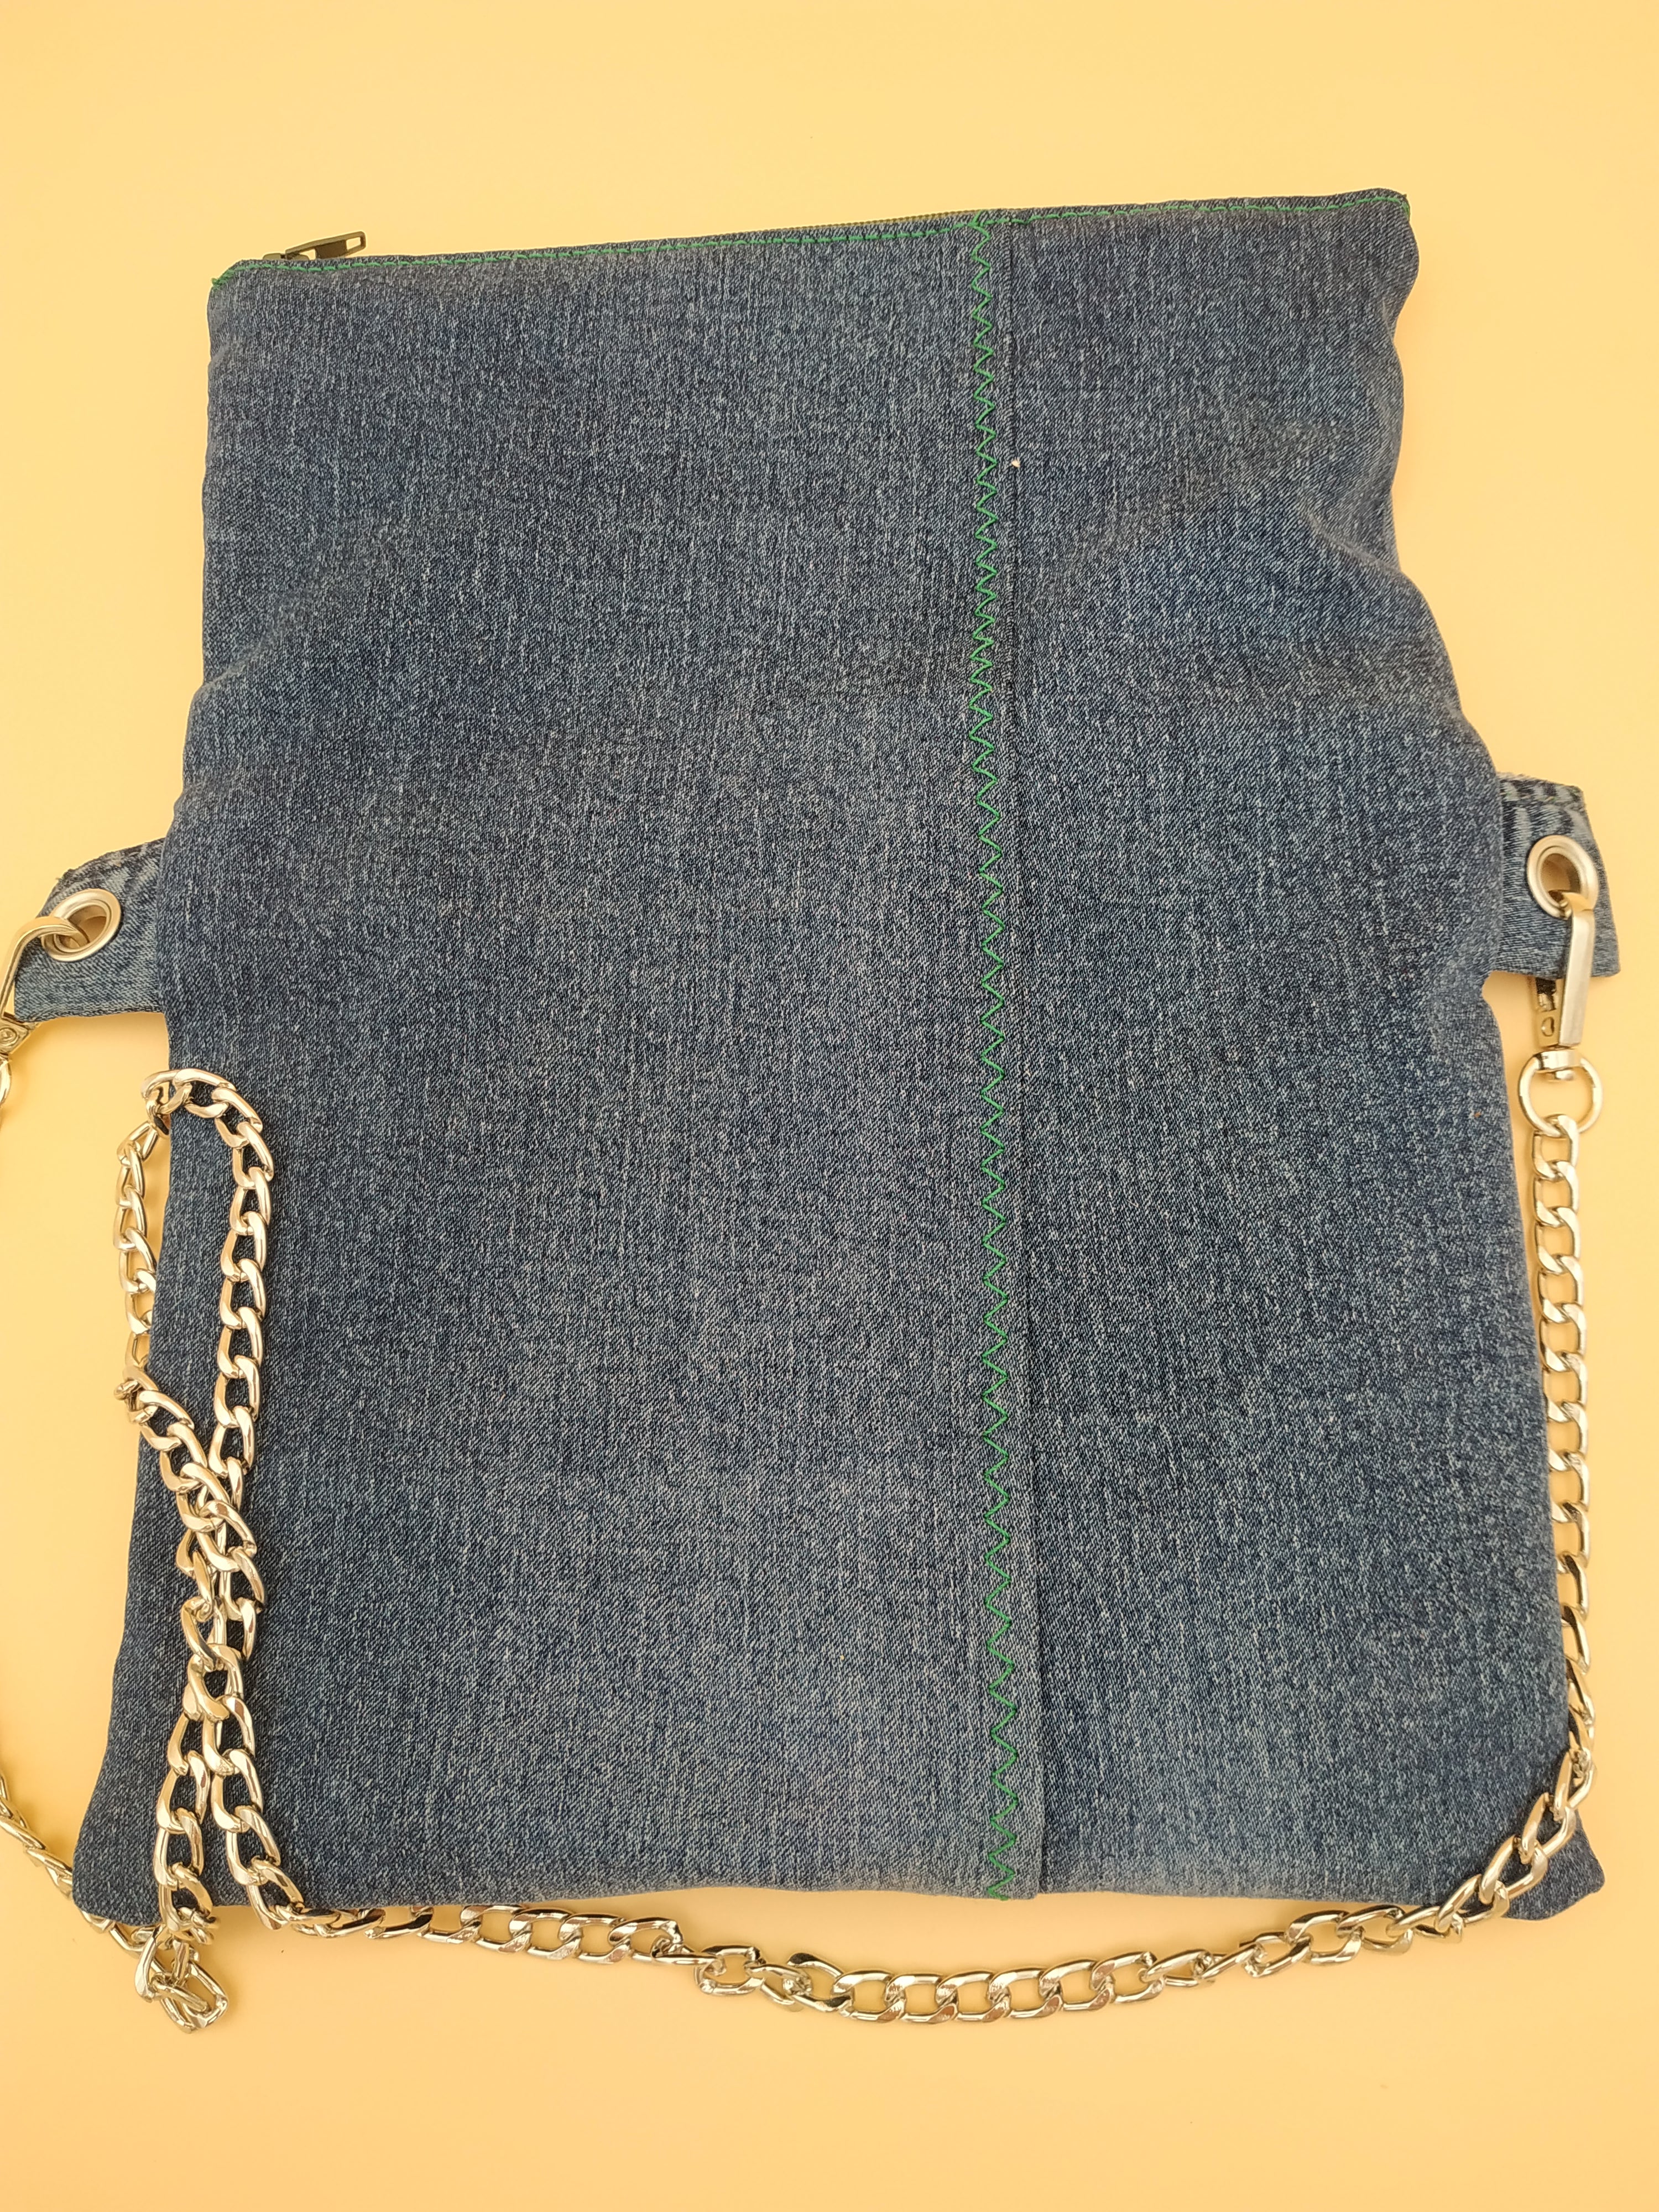 pochette repliée en jean recyclé : vue de dos